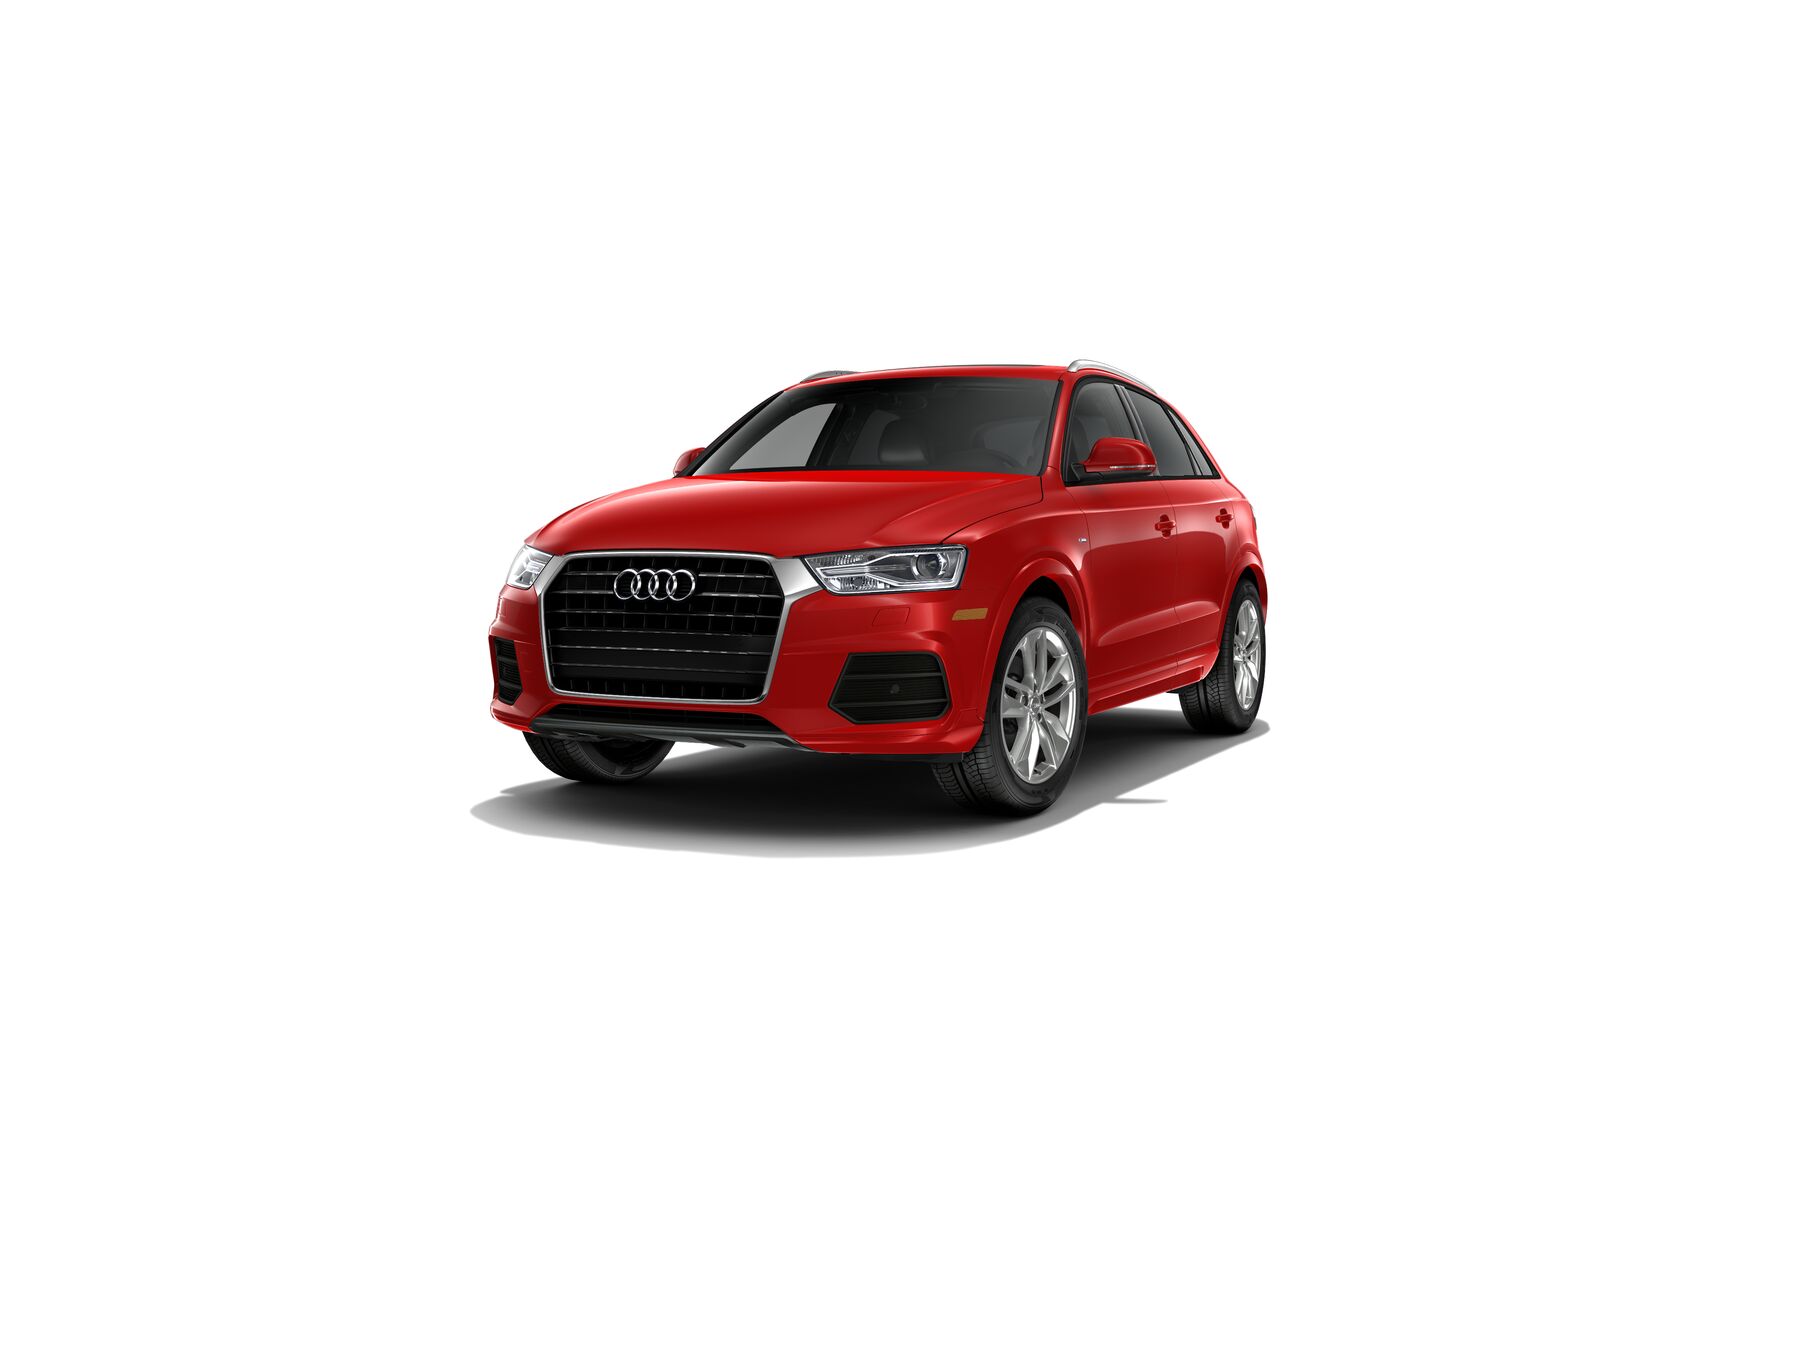 Audi Q3 Premium Plus front cross view